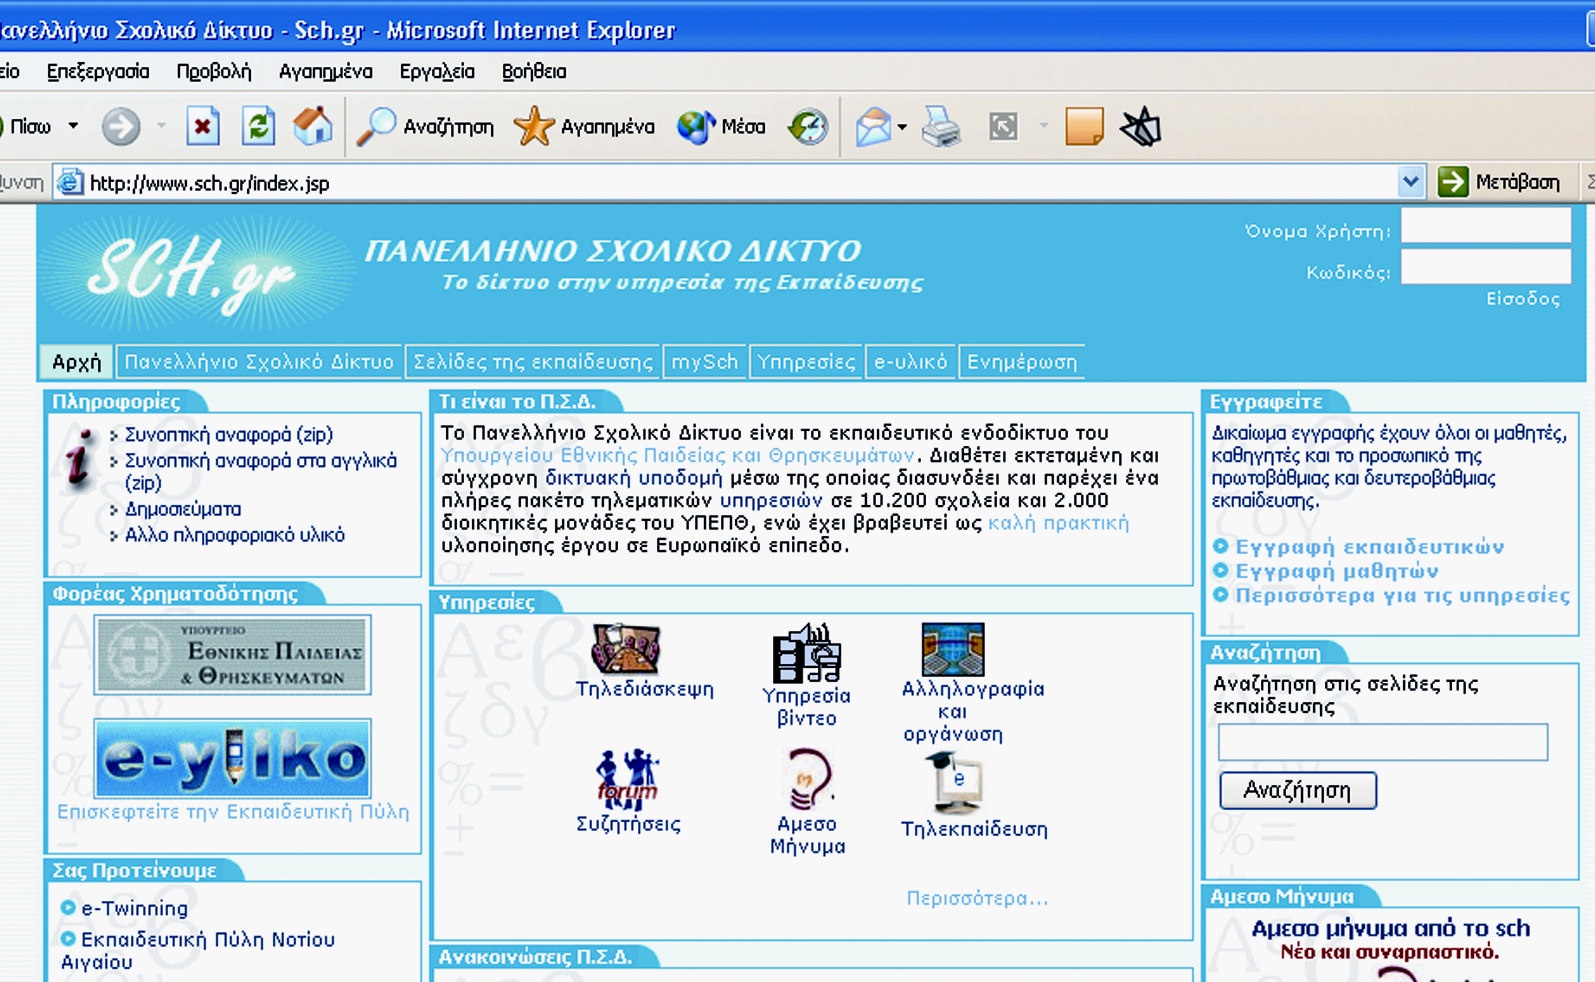 Η ιστοσελίδα του Πανελλήνιου Σχολικού ικτύου Για να µπορέσουµε να επισκεφτούµε την ιστοσελίδα του Πανελλήνιου Σχολικού ικτύου (Π.Σ..) πληκτρολογούµε στην περιοχή ιεύθυνση: www.sch.gr.